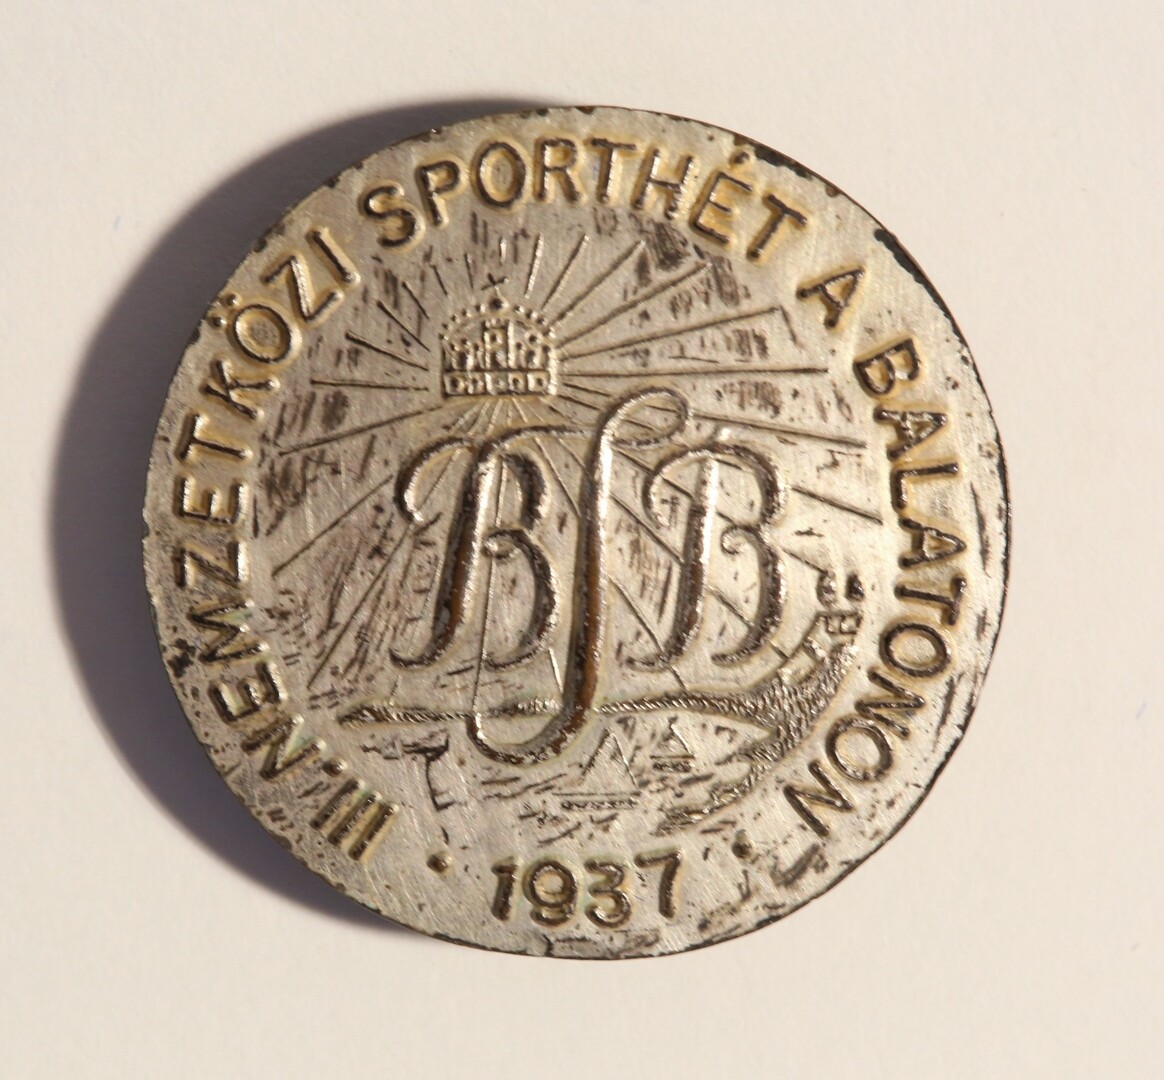 A III. Nemzetközi Balatoni Sporthét emlékjelvénye, 1937 (Magyar Környezetvédelmi és Vízügyi Múzeum - Duna Múzeum CC BY-NC-SA)